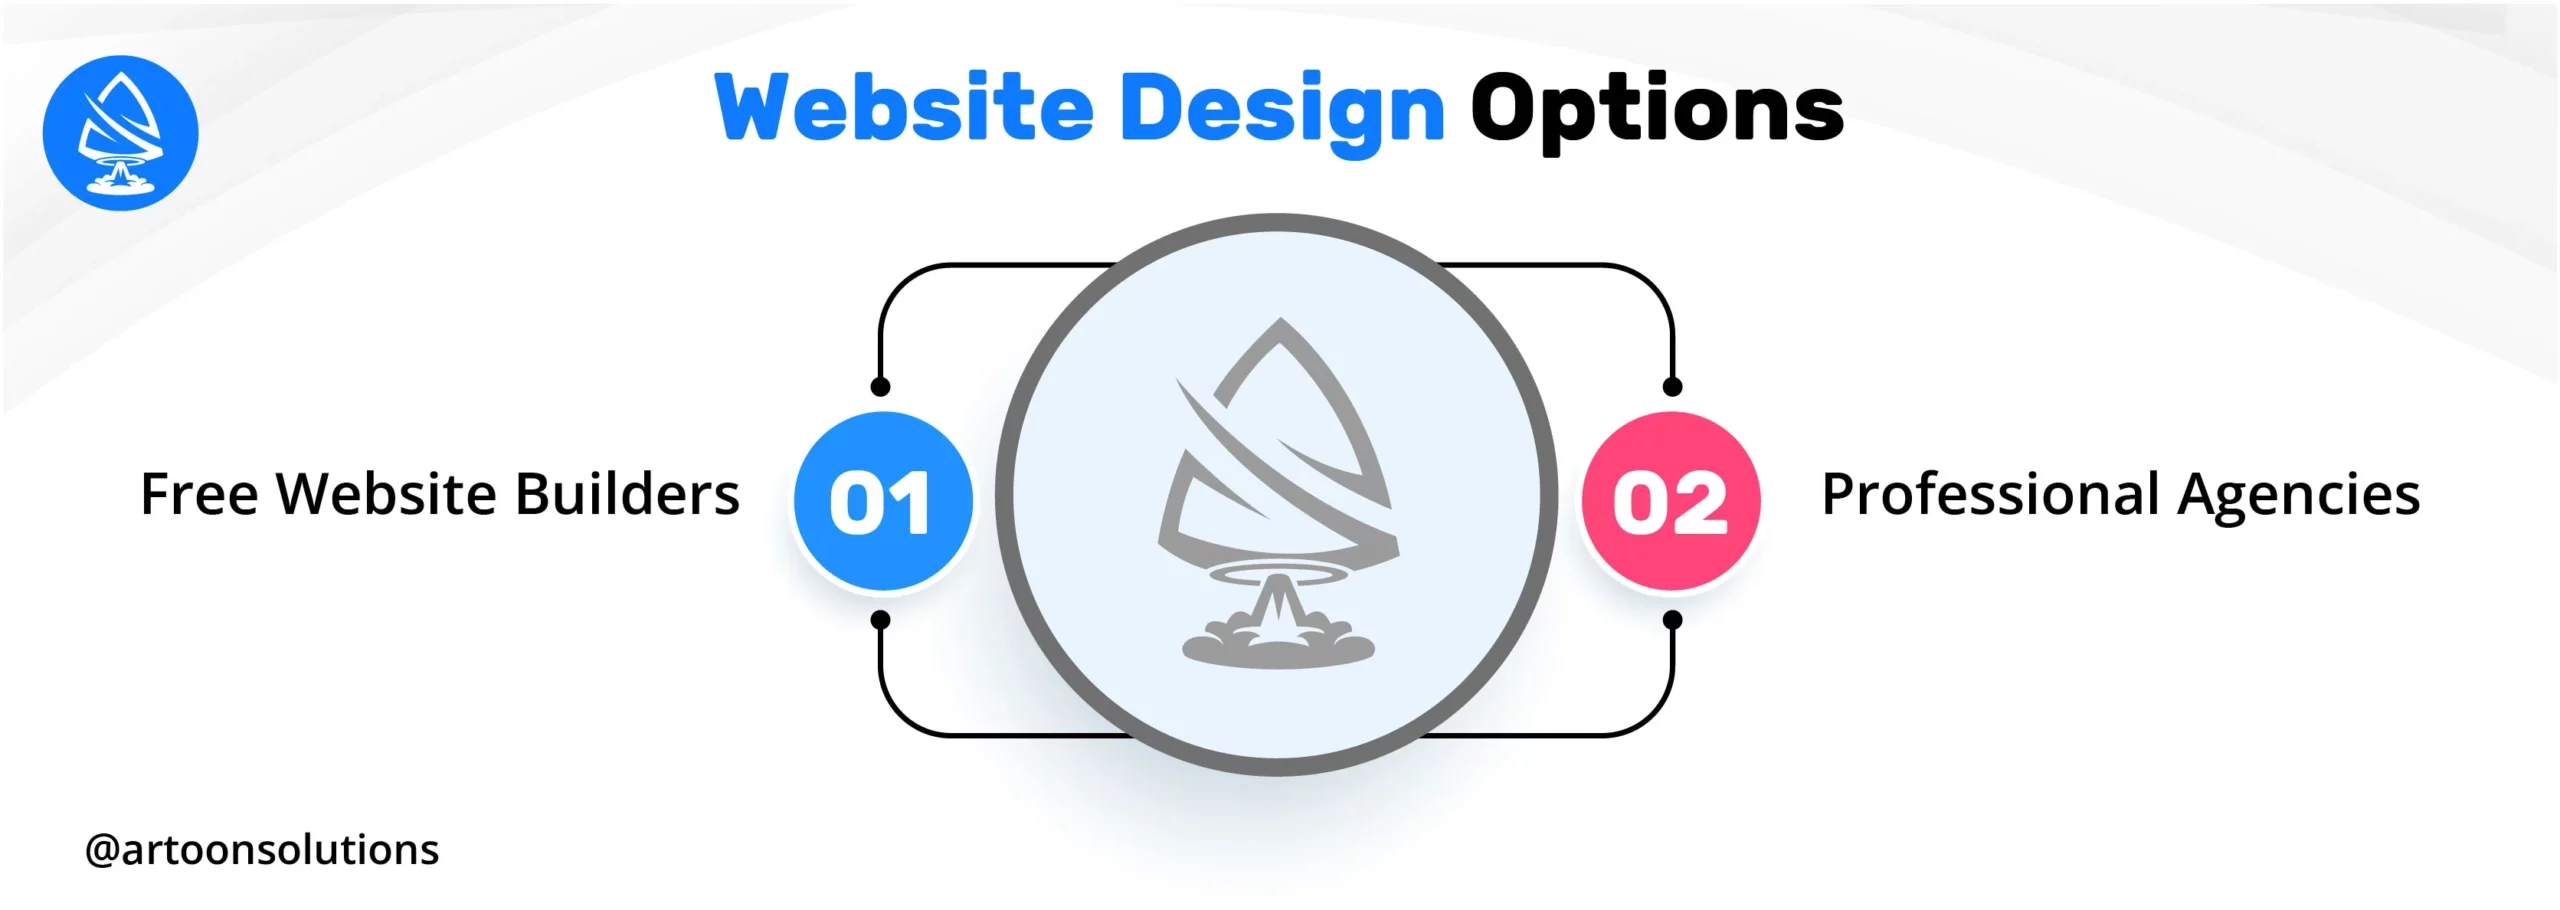 Website Design Options for Own Website 